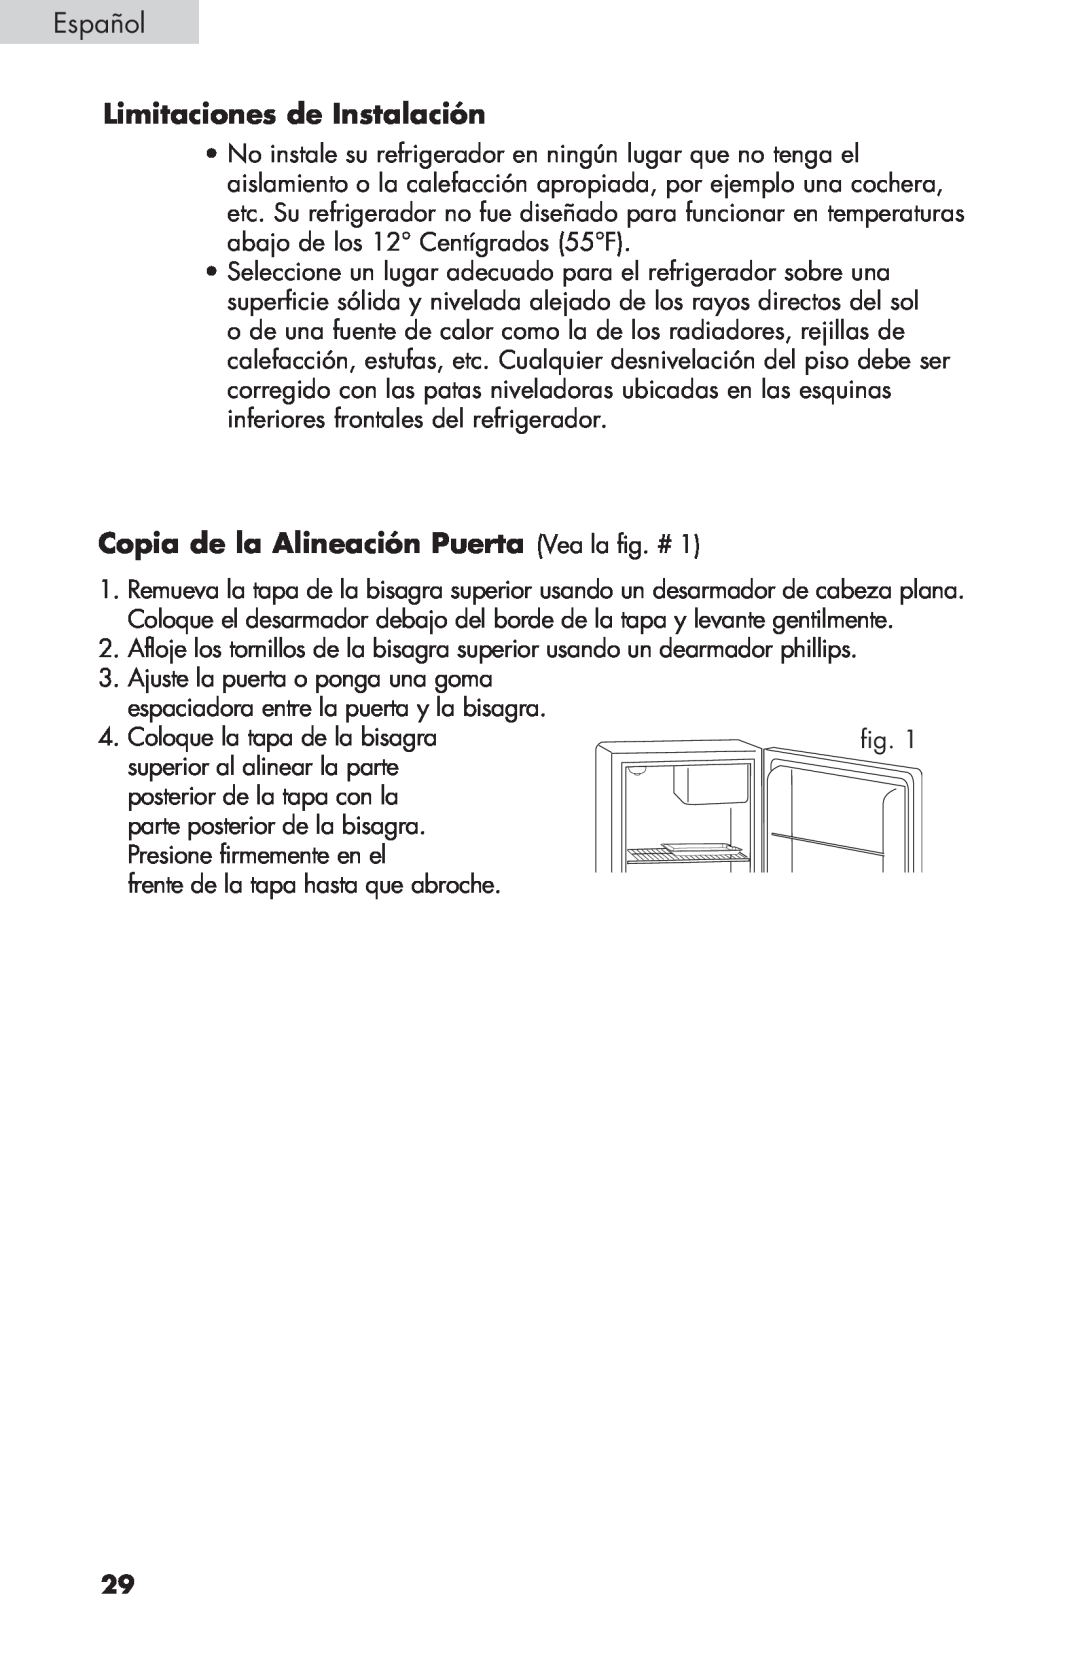 Haier BCF27B manual Limitaciones de Instalación, Copia de la Alineación Puerta Vea la fig. #, Español 